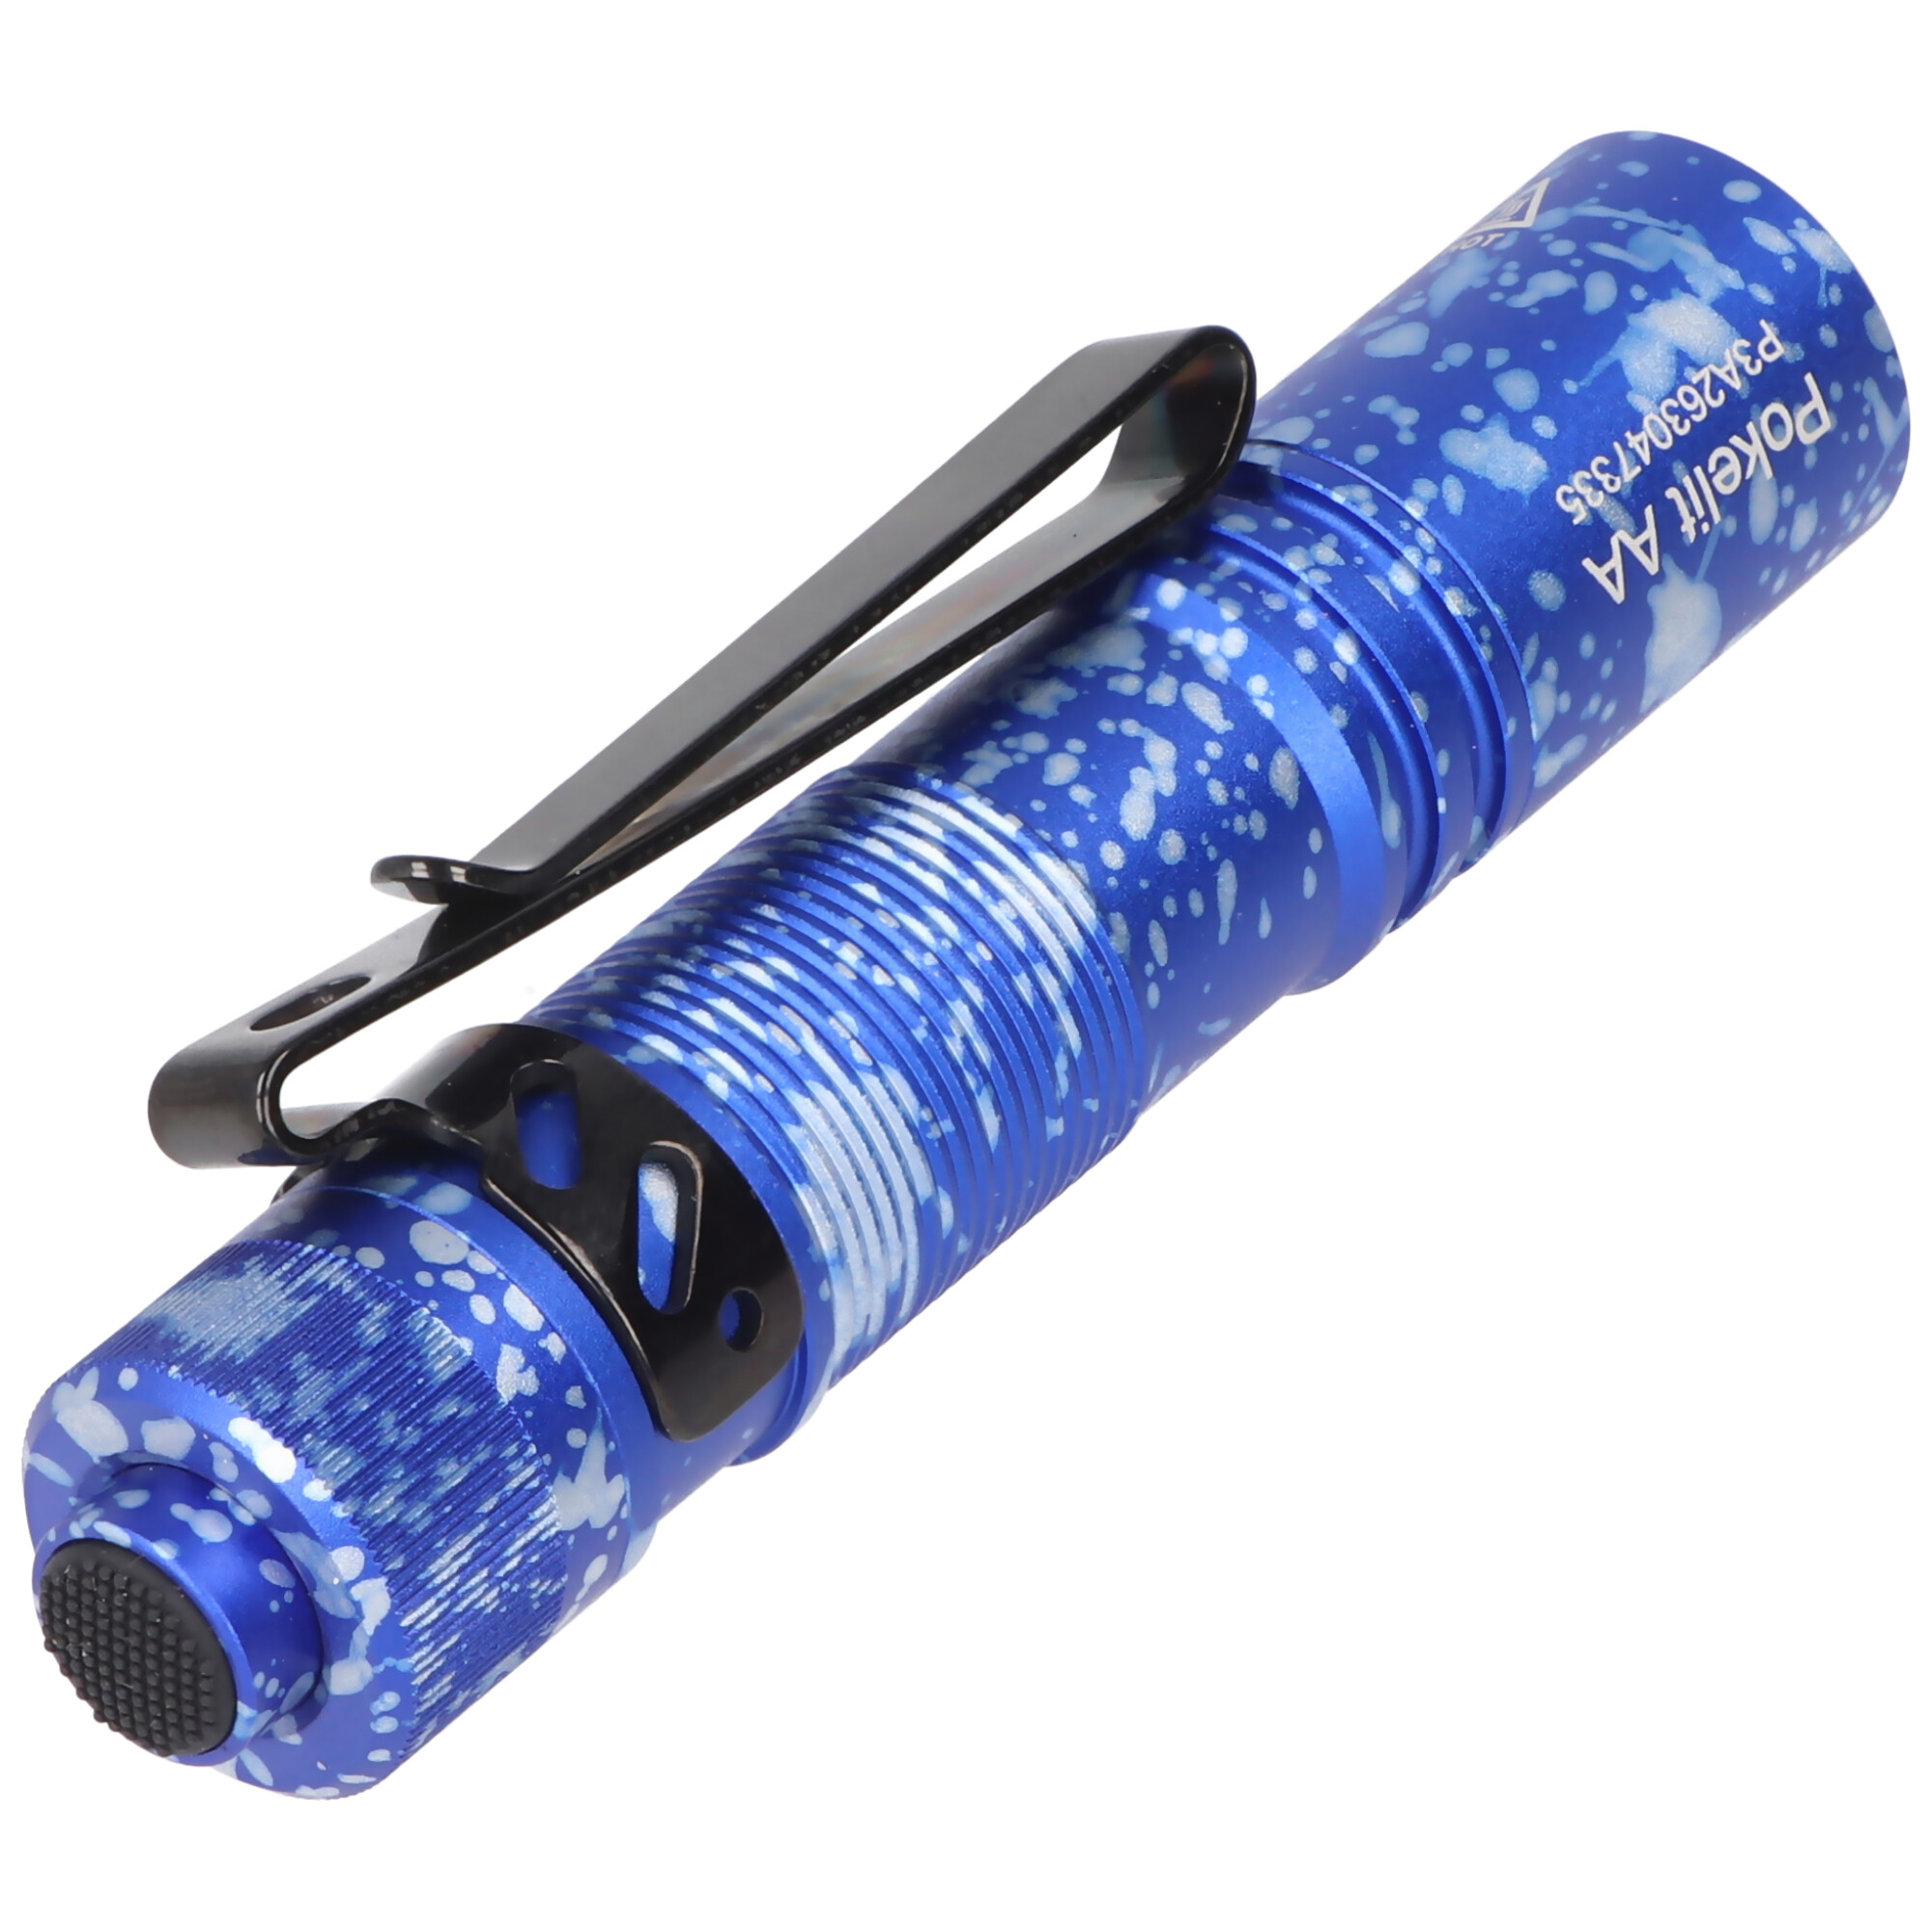 AceBeam Pokelit AA LED-Taschenlampe in blauer camouflage Optik, 550 Lumen, inklusive 14500 Li-Ion 920mAh Akku mit USB-C Anschluss